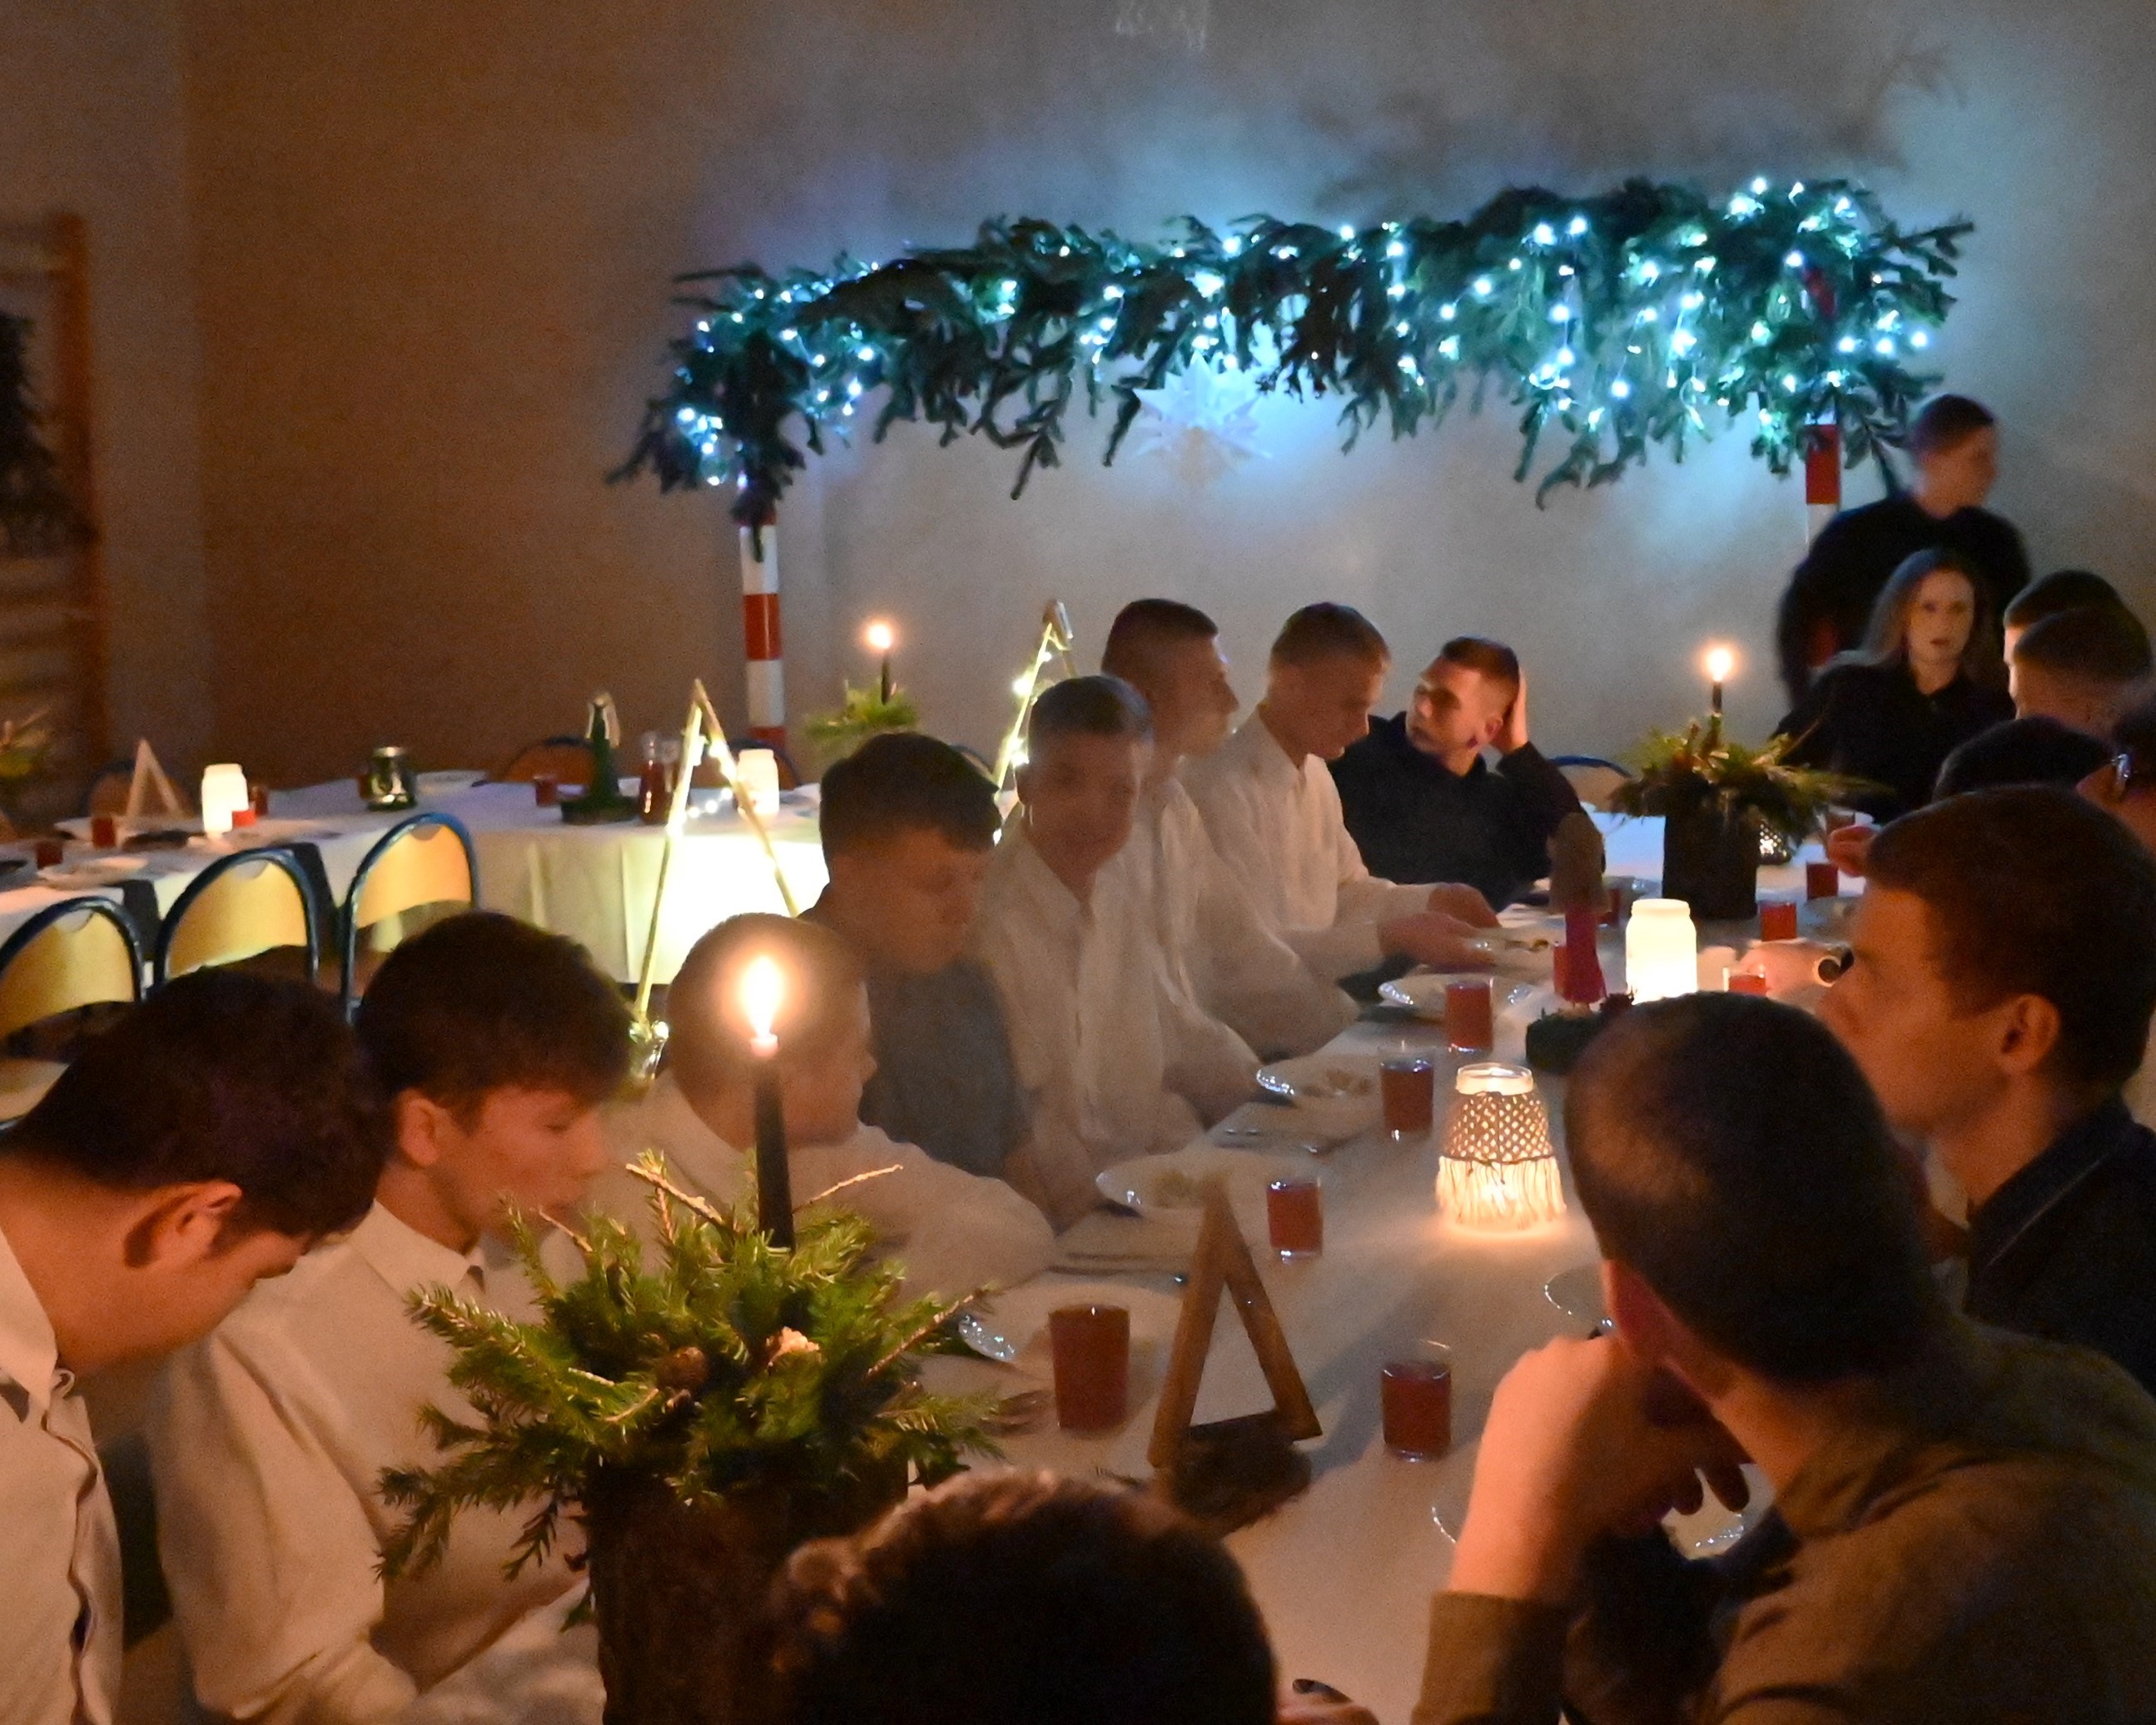 Wigilia w Ośrodku | Widok ogólny chłopców w białych koszulach zasiadających przy wigilijnym stole. W głębi stołu, między uczniami, jedna z wychowawczyń. Na stole i na ścianie stroiki ze śiatełkami bądź świecami.JPG